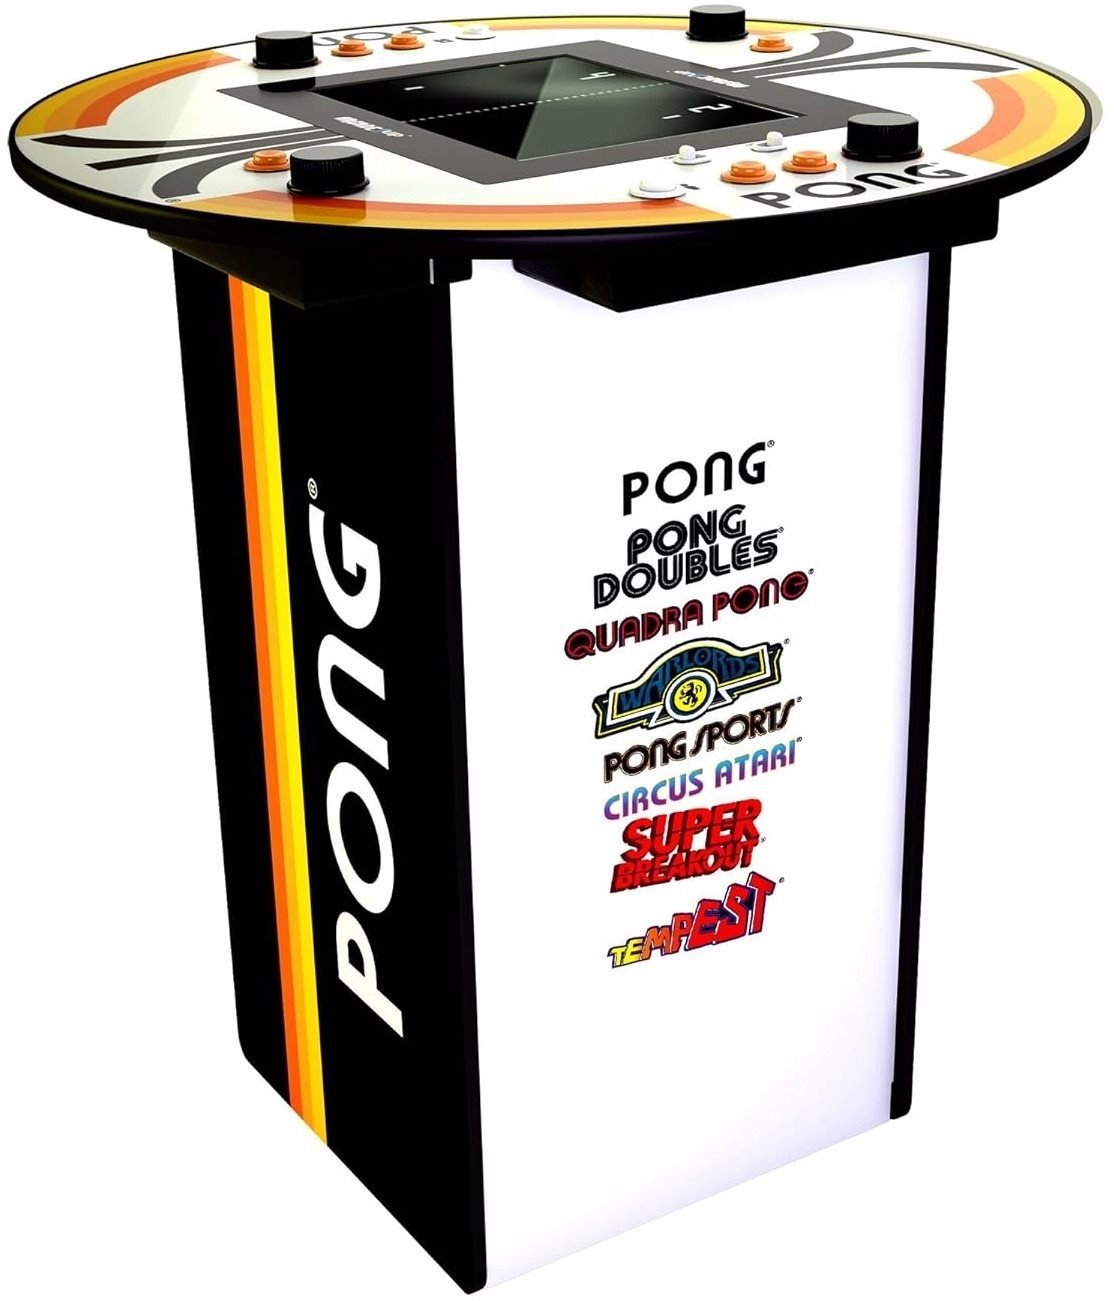 Arcade1up Pong Arcade Table